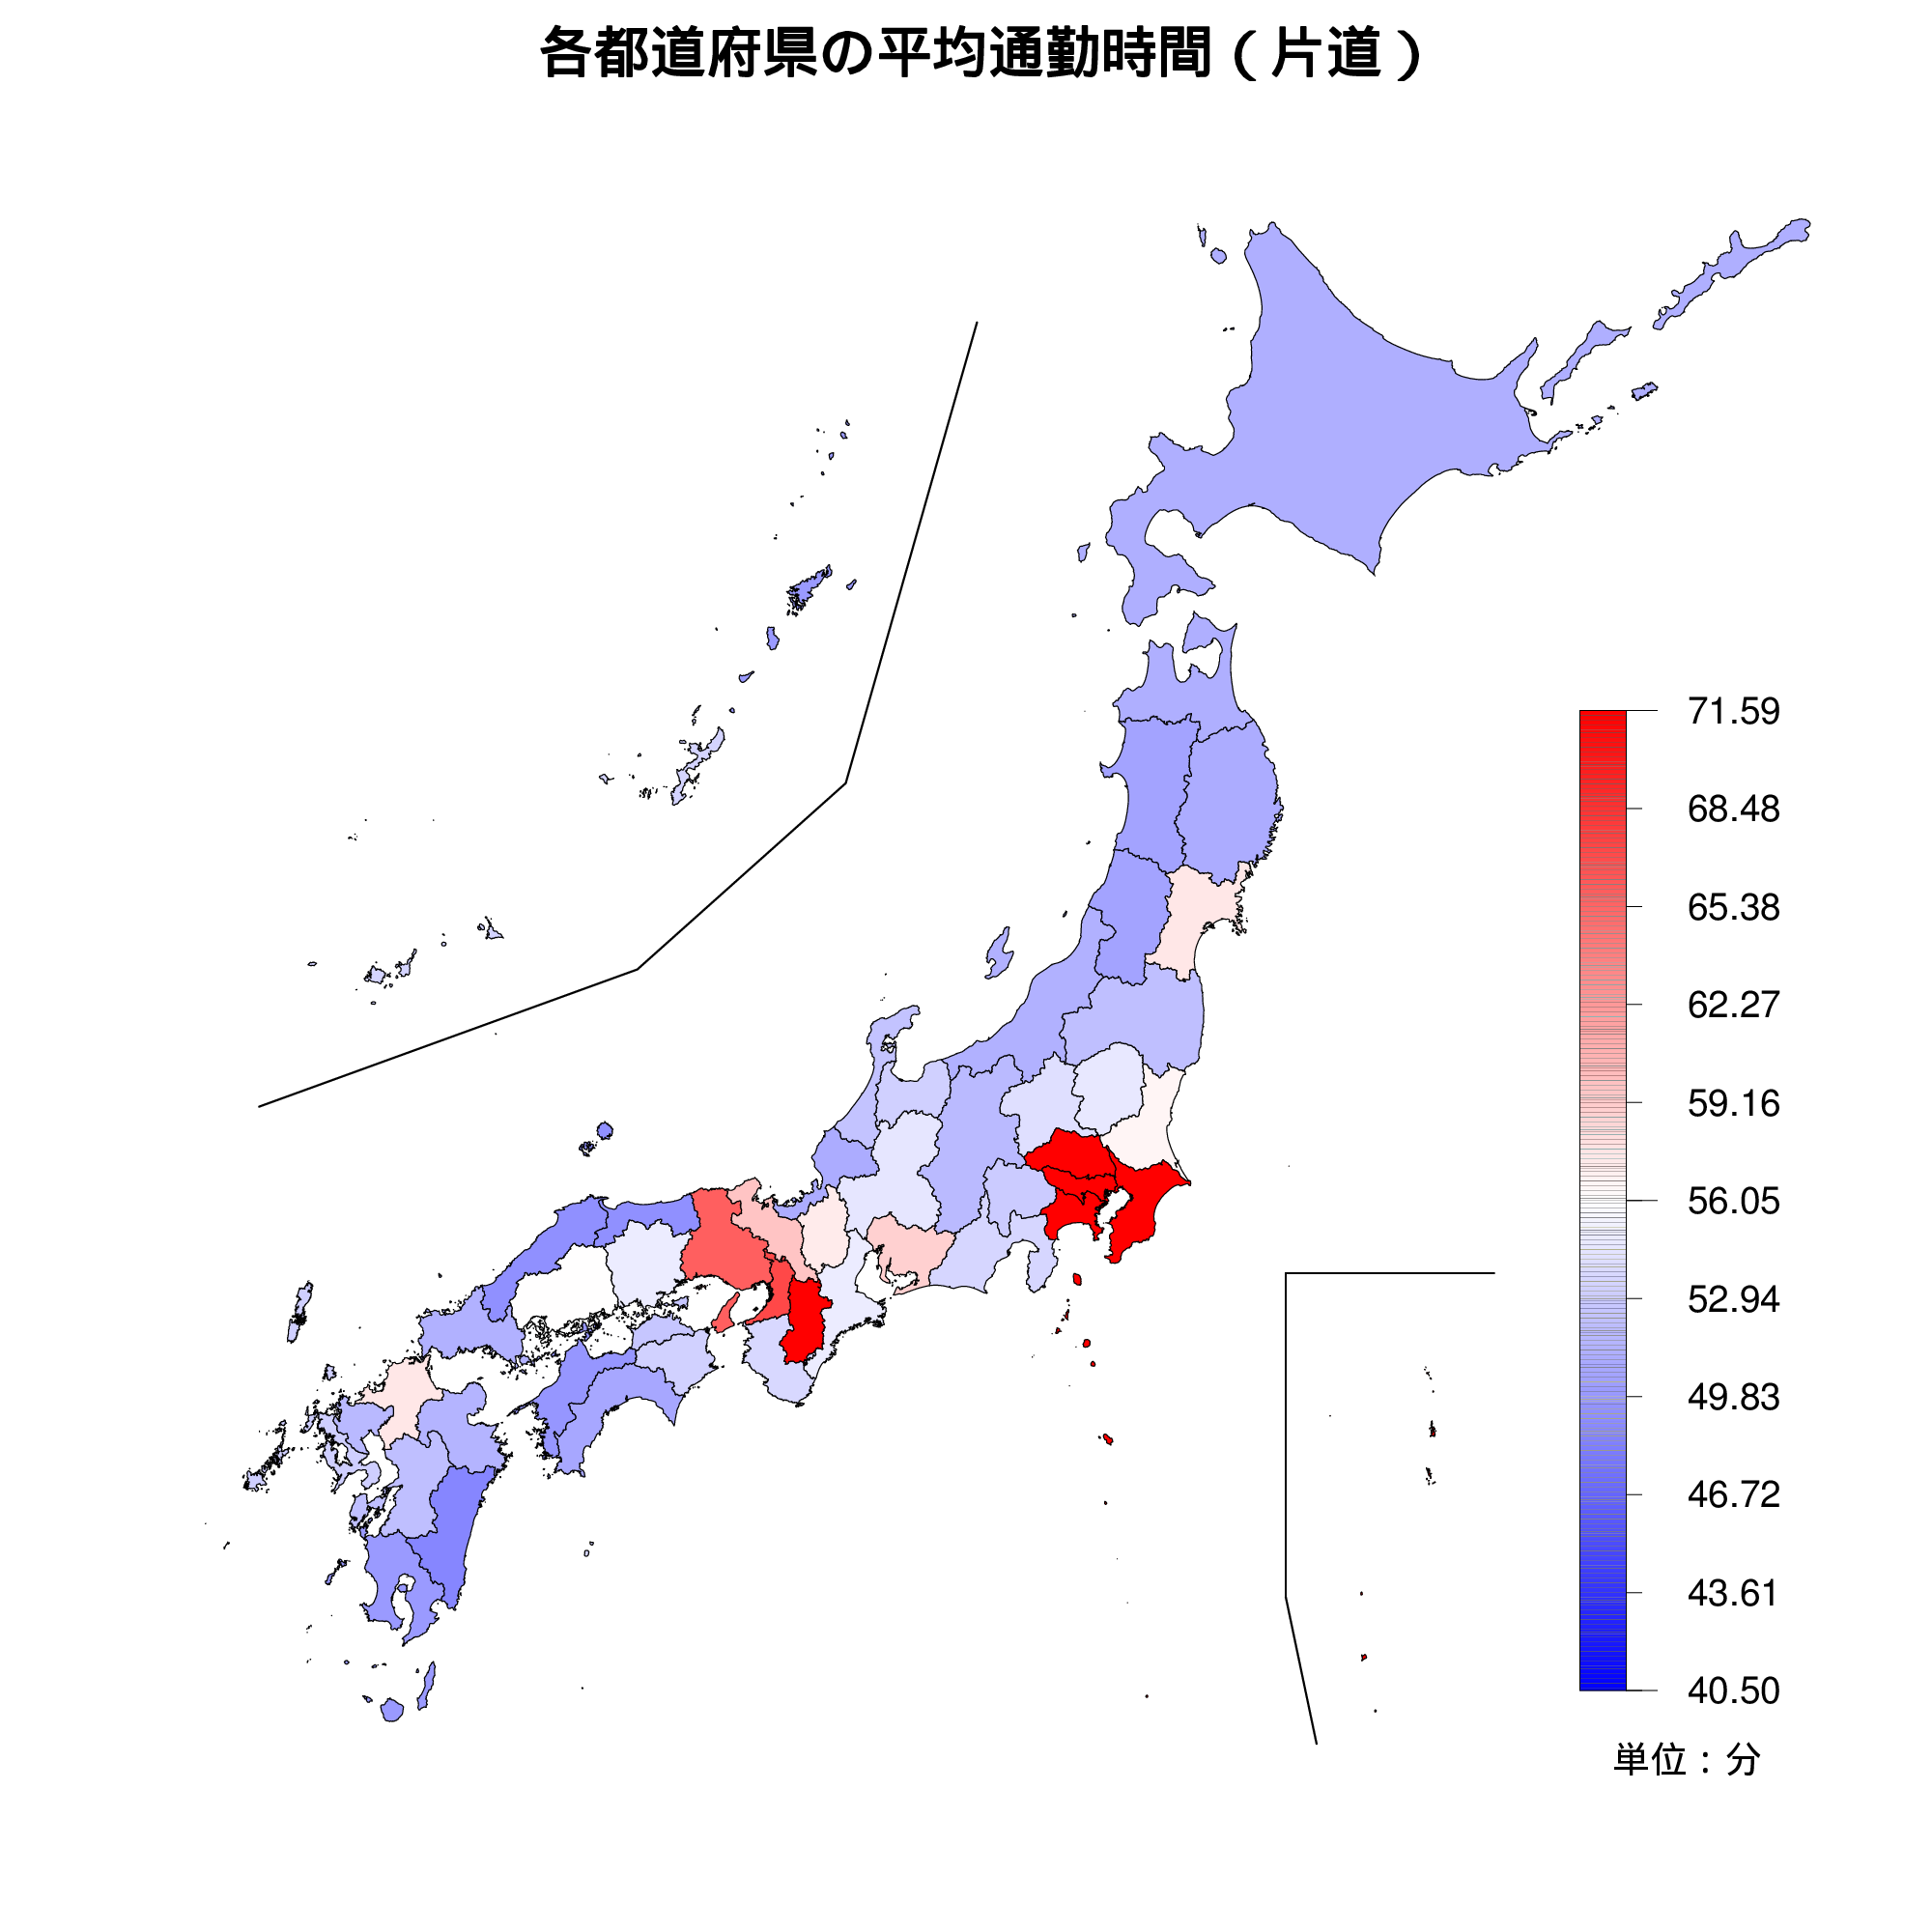 各都道府県の平均通勤時間を示す全国地図